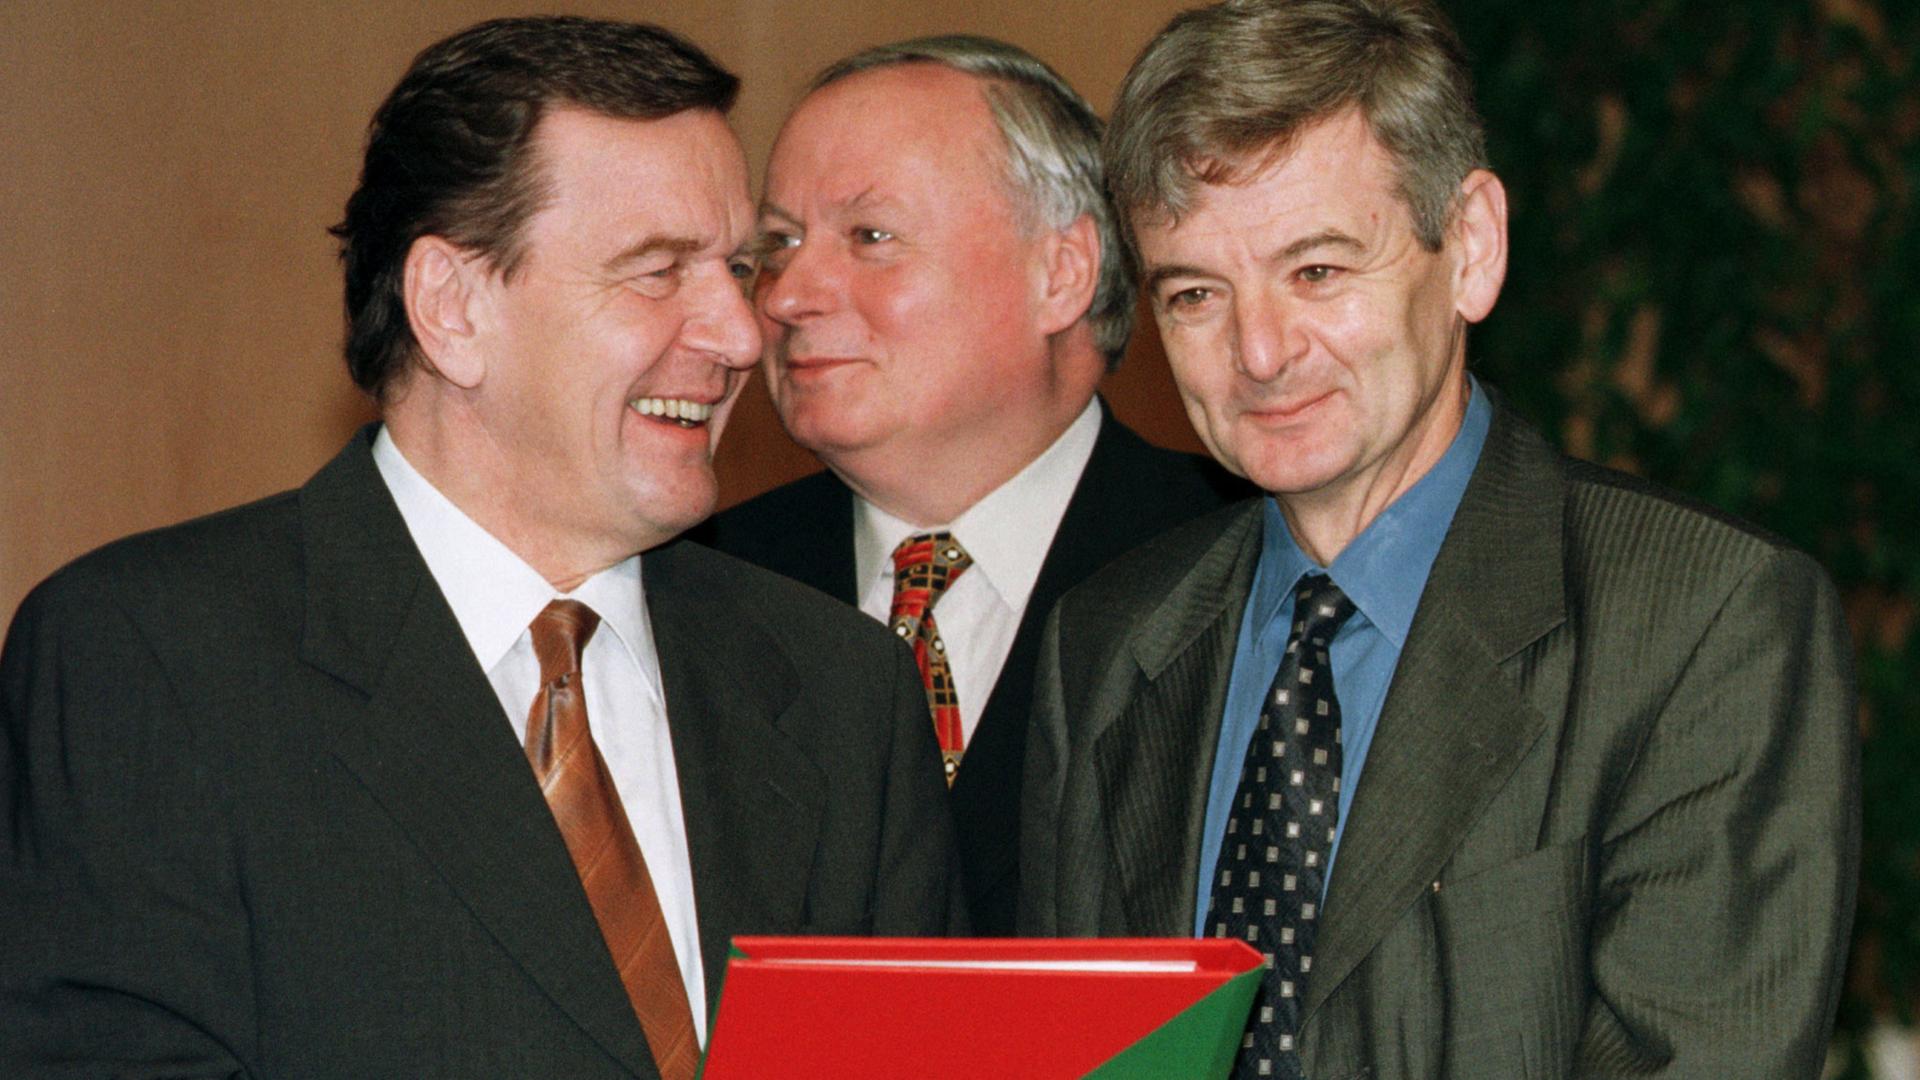 Die erste rot-grüne Bundesregierung: Bundeskanzler Schröder, Finanzminister Lafontaine, Aussenminister Fischer mit dem Koalitionsvertrag